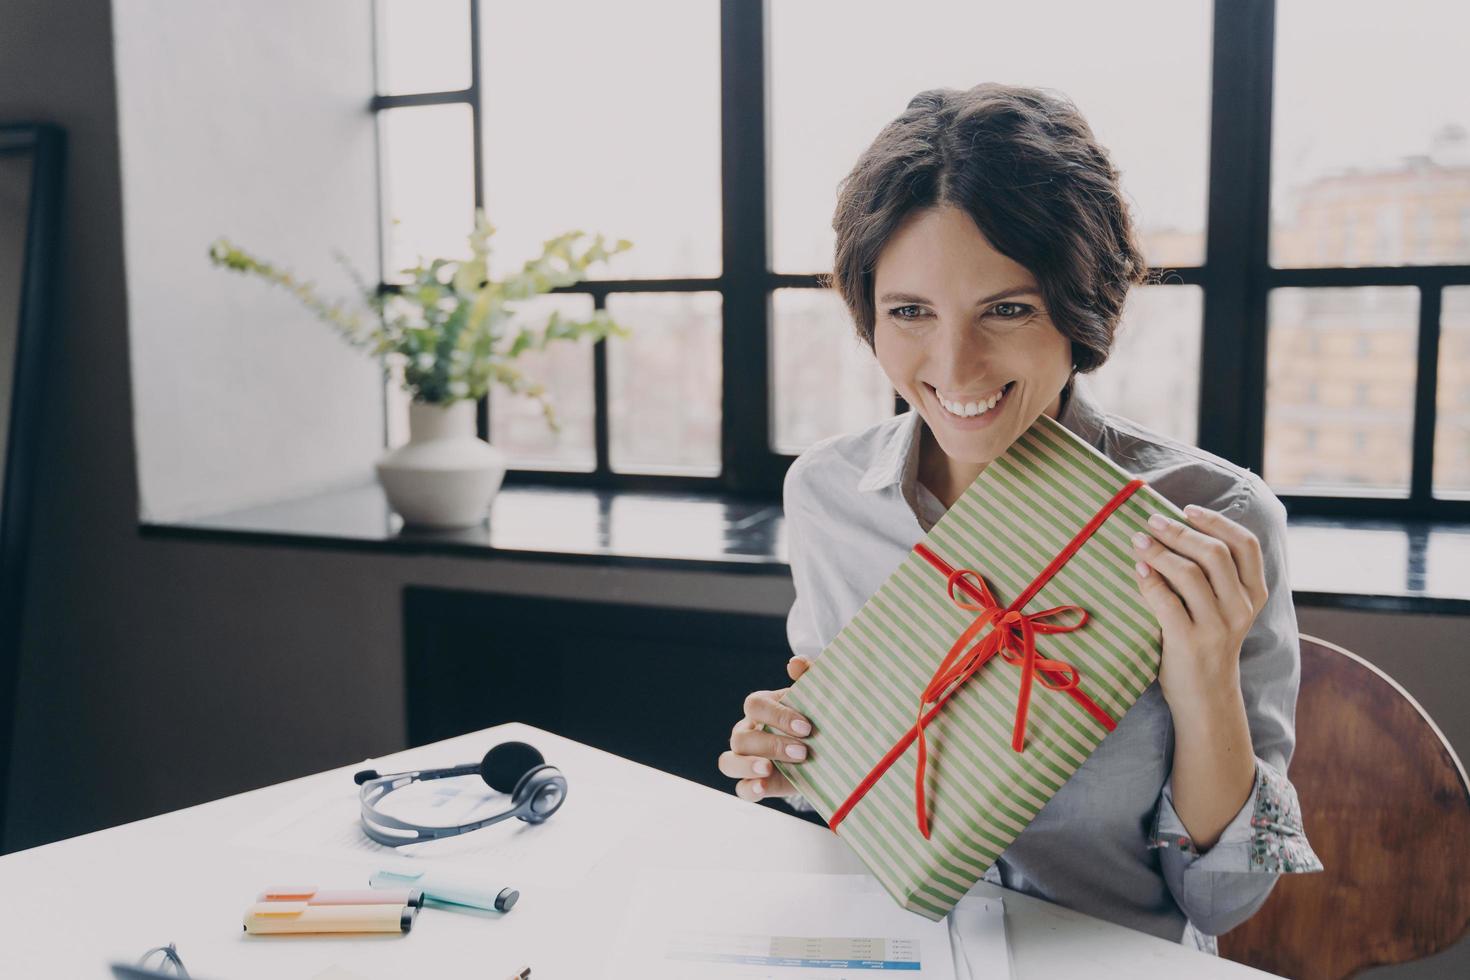 Cheerful lady office employee looking at screen largement souriant montrant au cadeau de Noël de la caméra de l'ordinateur photo